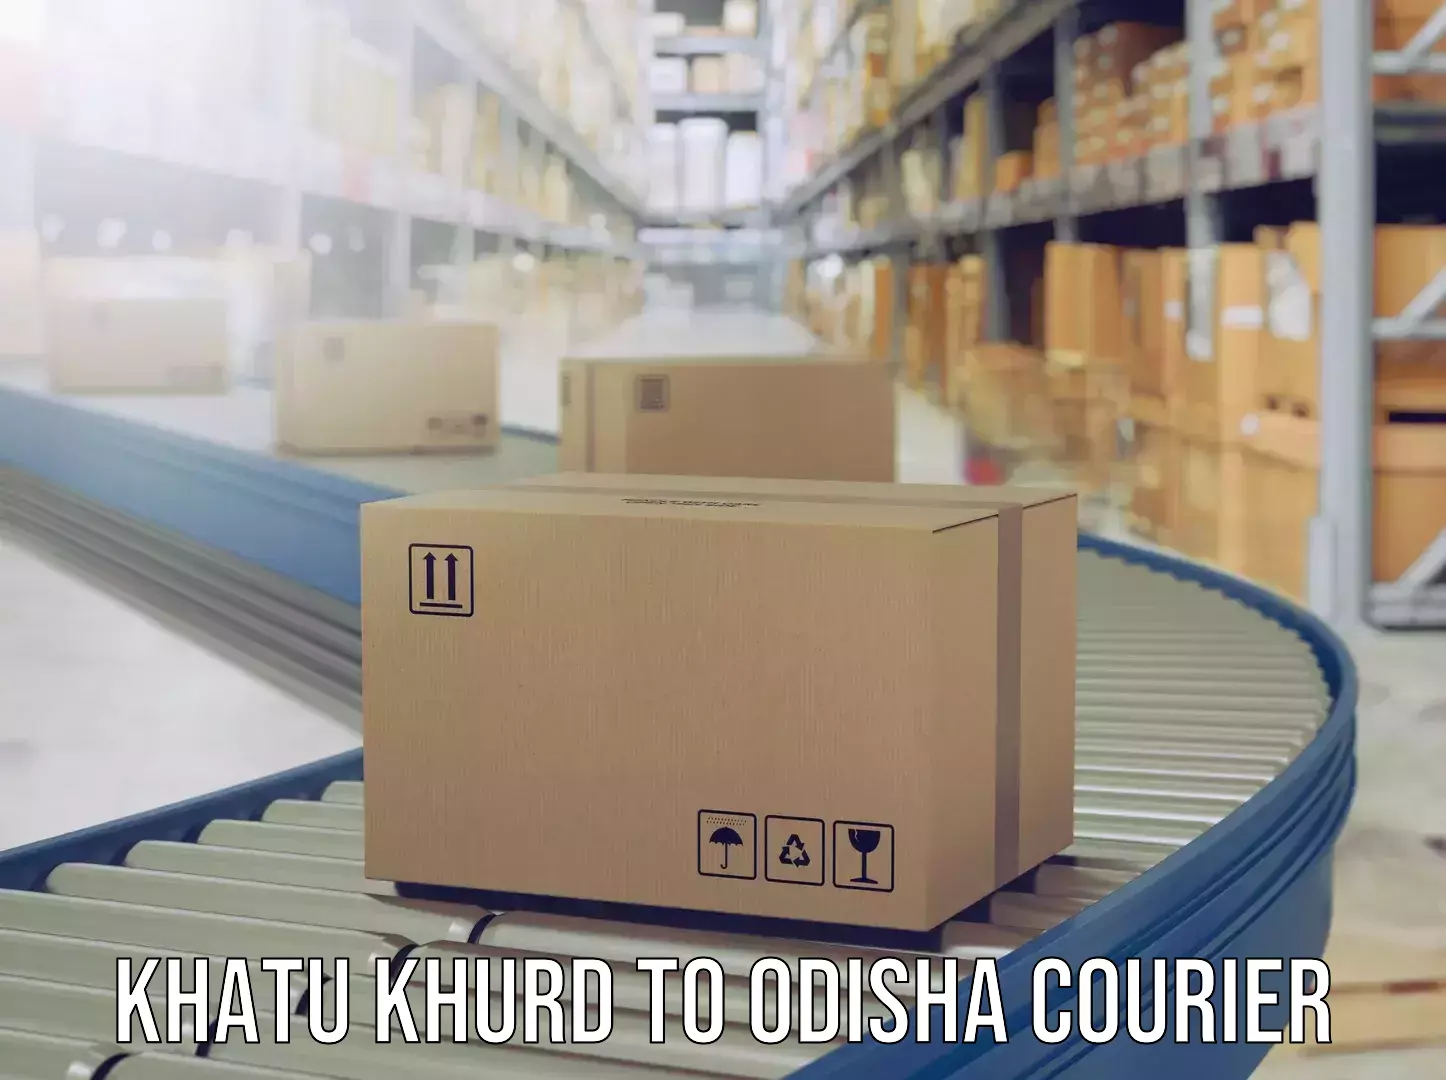 Personalized luggage shipping Khatu Khurd to Kosagumuda